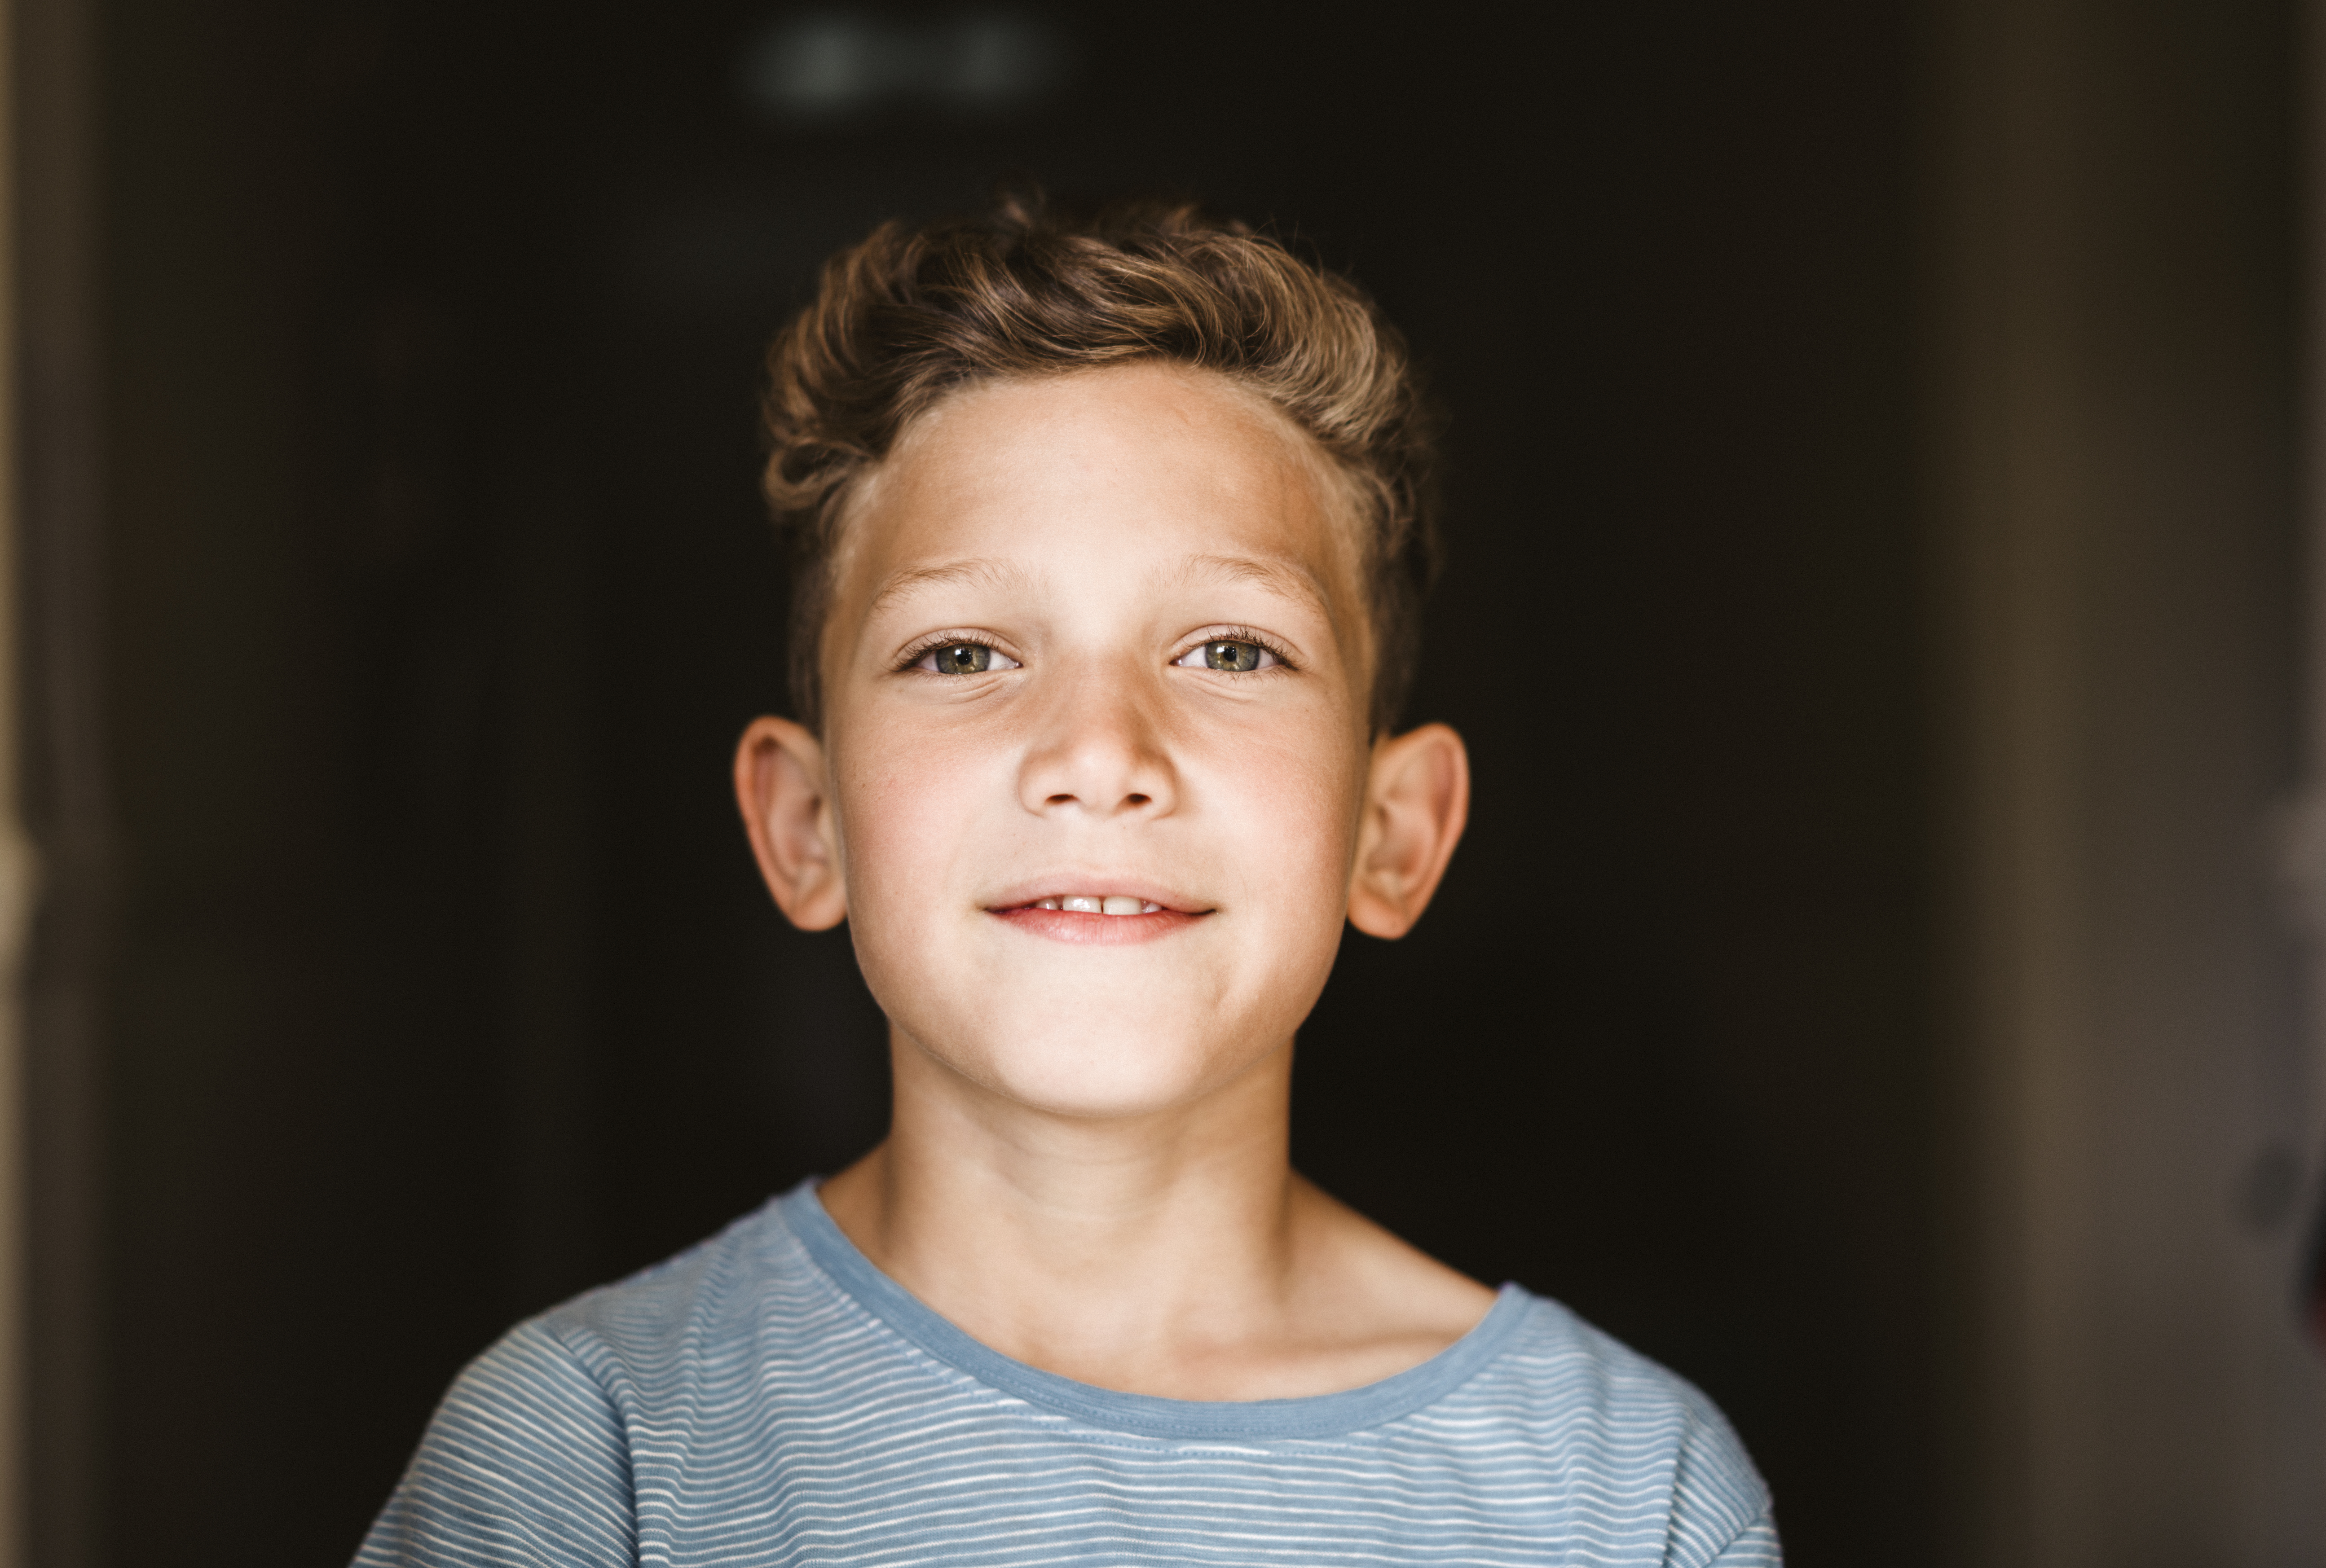 Un joven sonriente | Foto: Getty Images